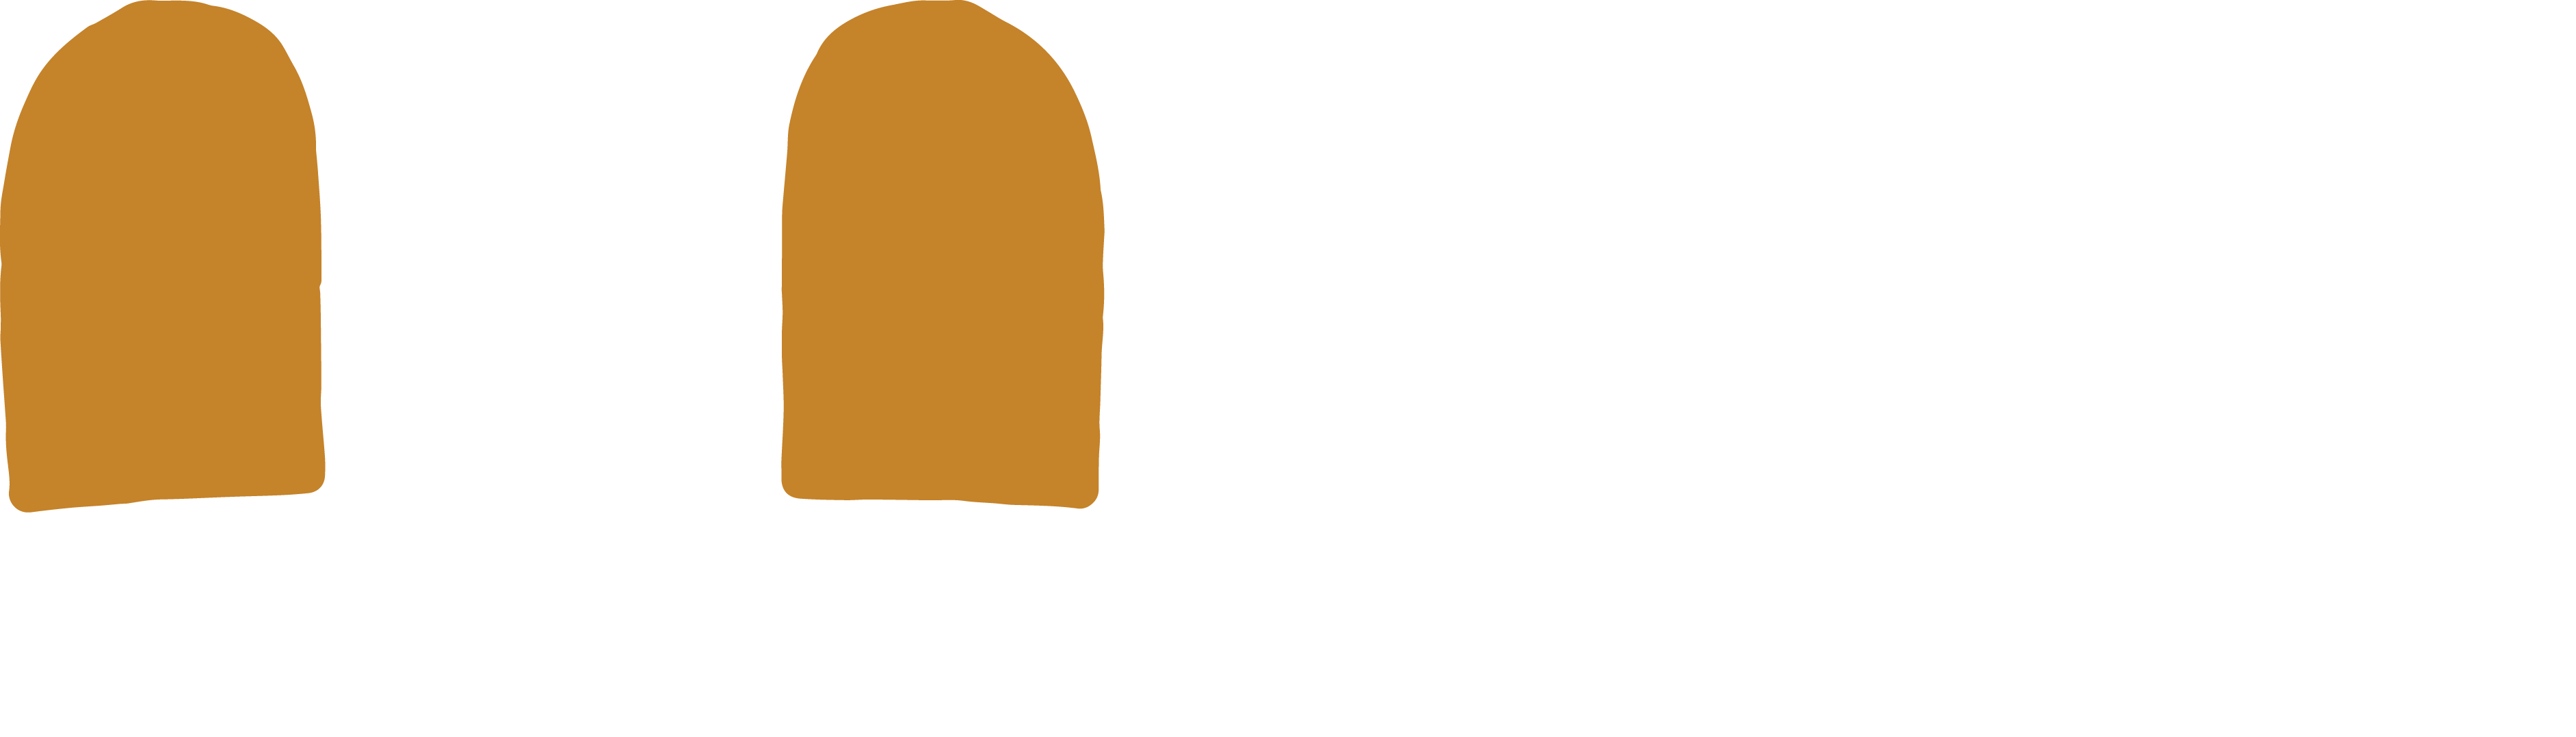 Naked Lounge